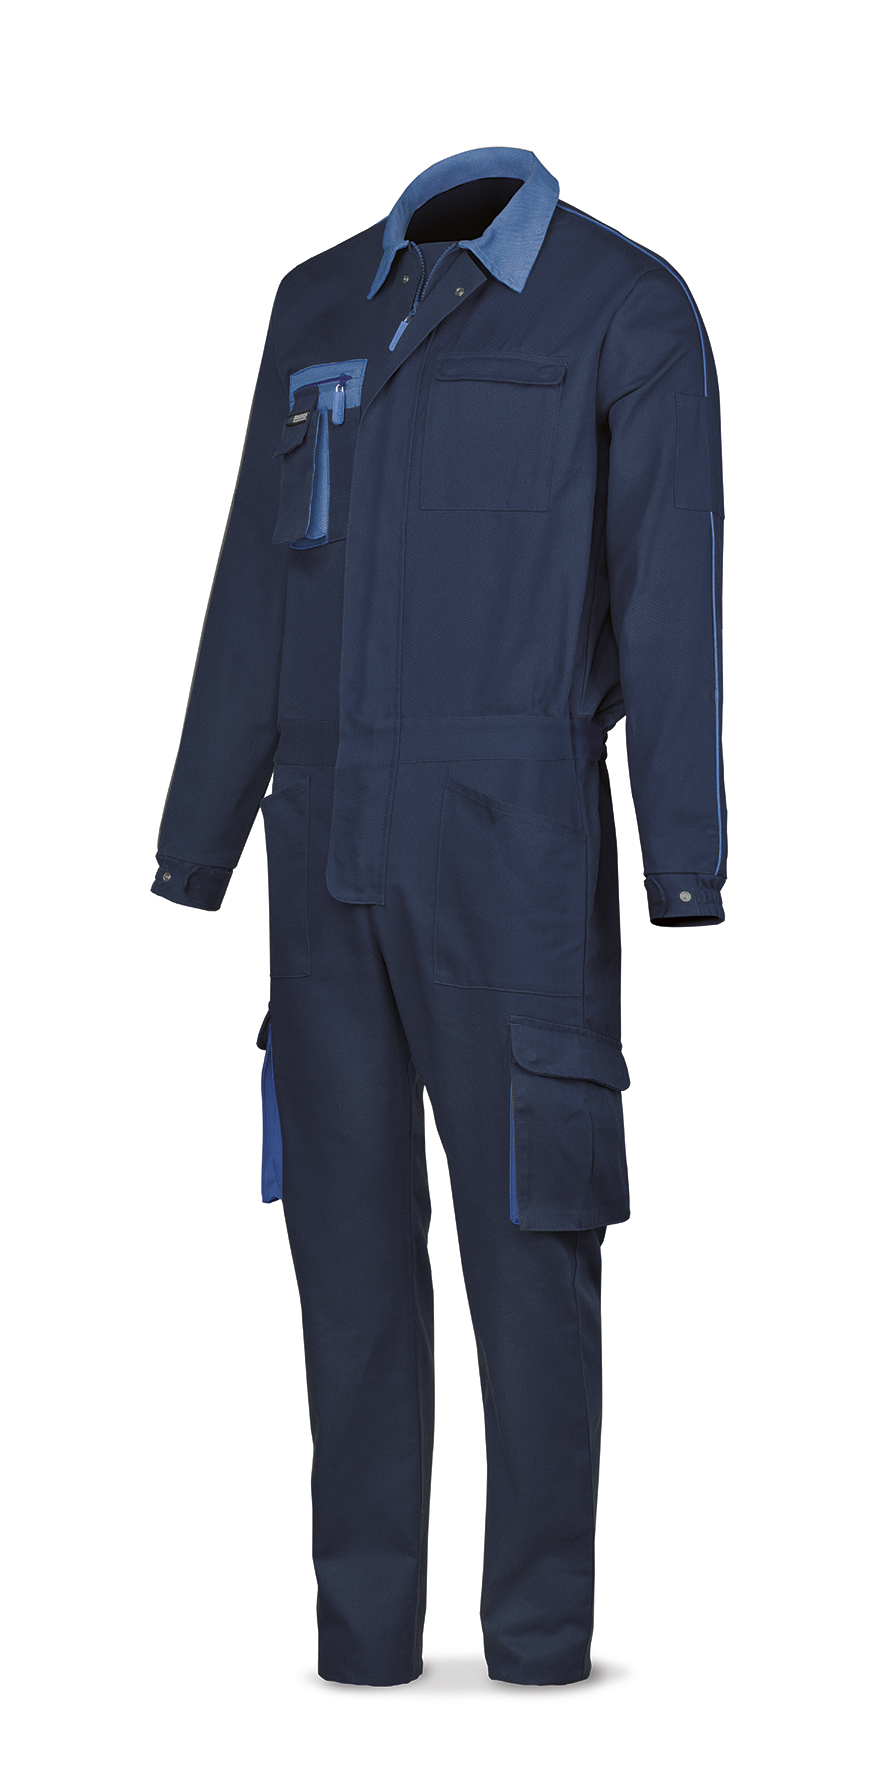 488-B SupTop Vetements de travail laboral Série SuperTop Combinaison bleue en coton 270 g. Multi-poches